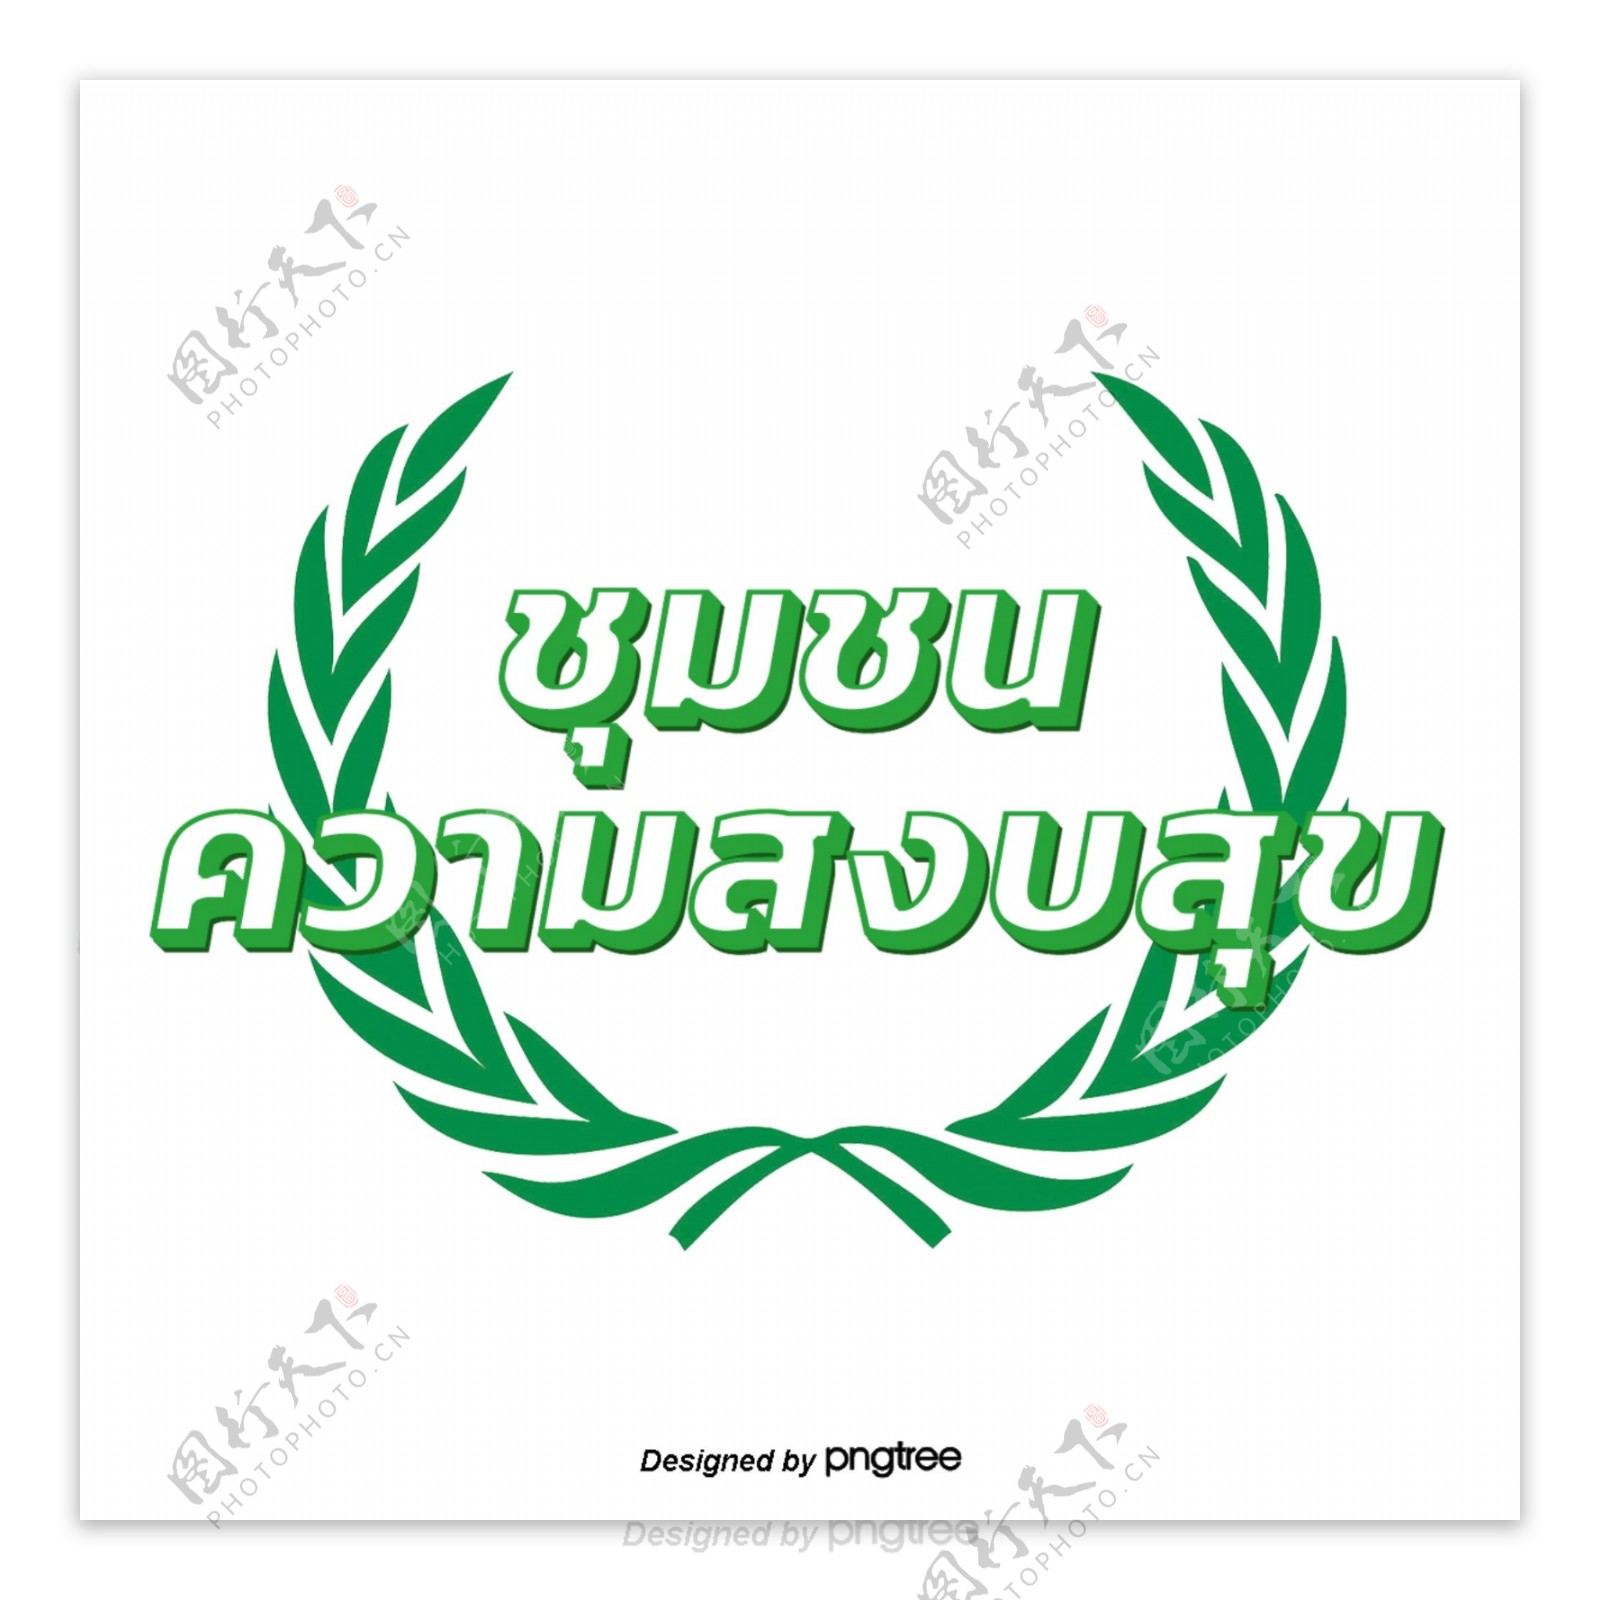 泰国人白绿色字体字体家庭幸福的框架